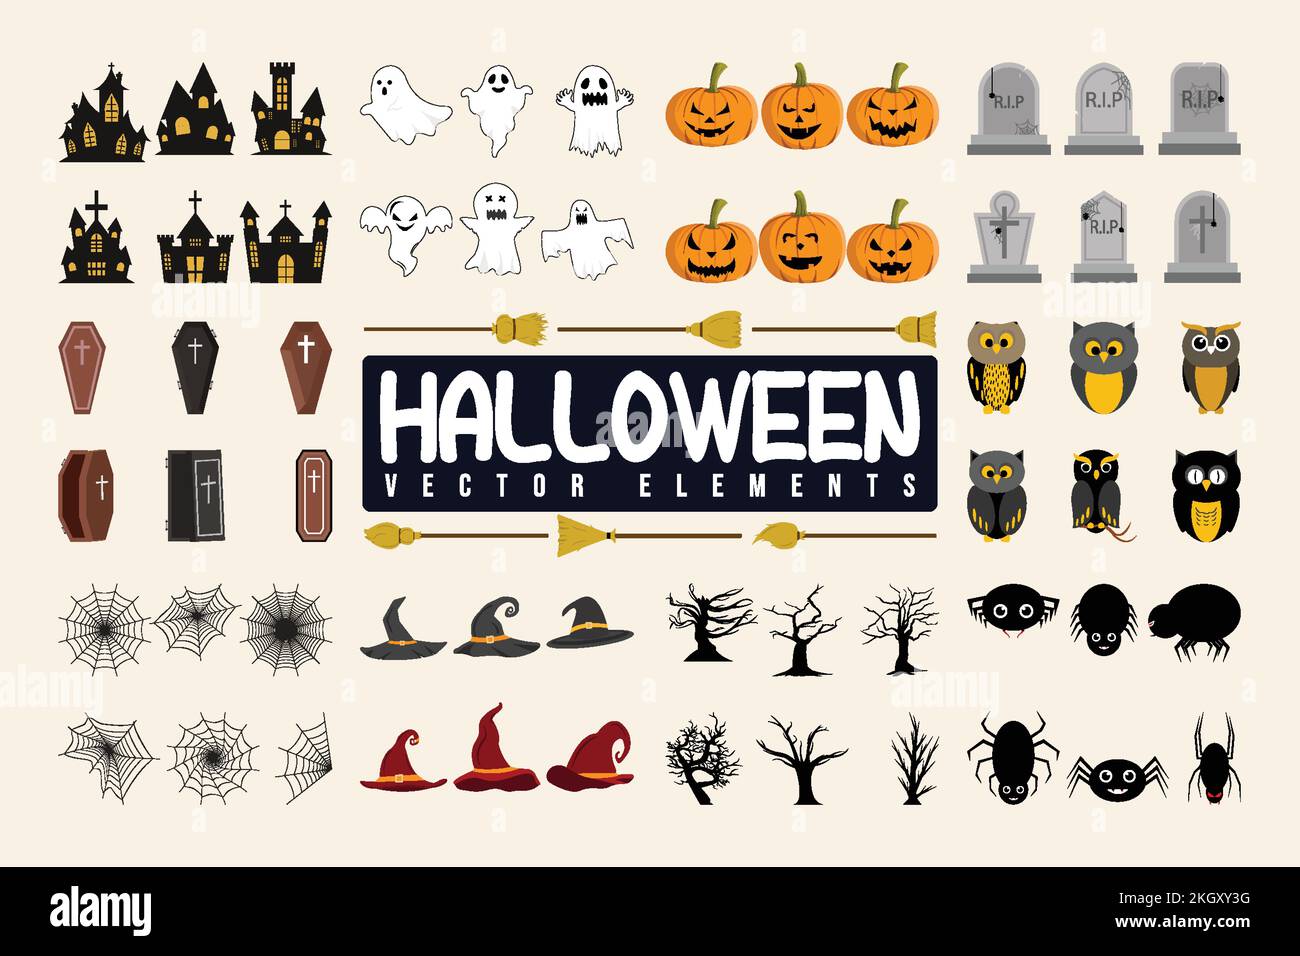 Halloween-Element-Bündel-Symbol für T-Shirts. Särge, Geist, Spinne, Hut, Besen, Toter Baum, Eule, Spukhaus, Grabstein, Kürbis, Usw. Stock Vektor